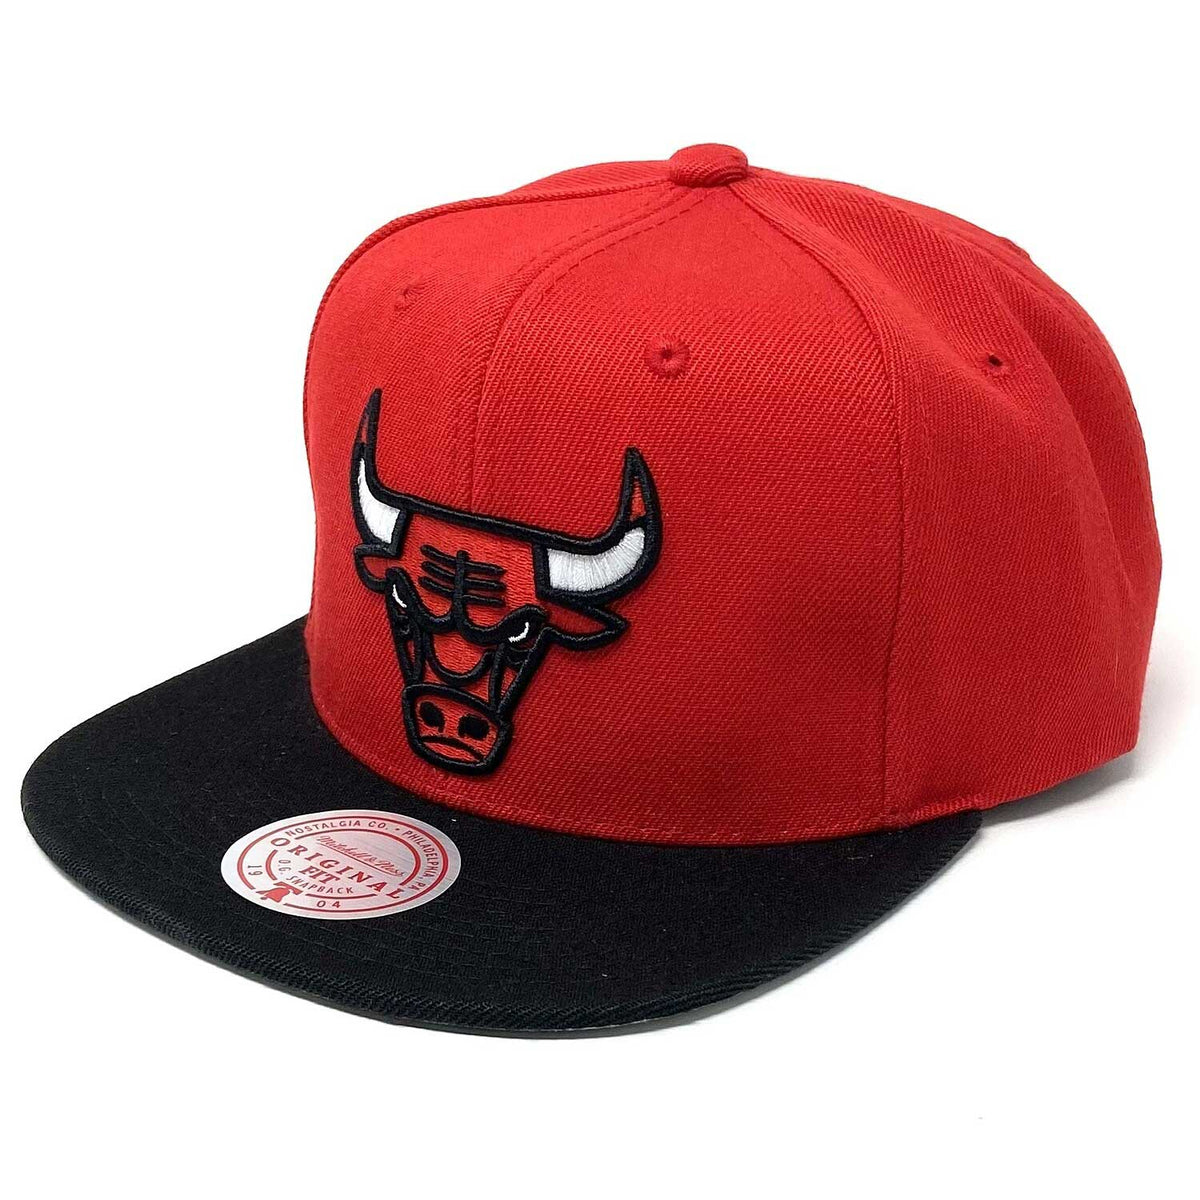 Chicago Bulls Hat Adult Adjustable Snap Back Black Red Faux Snake